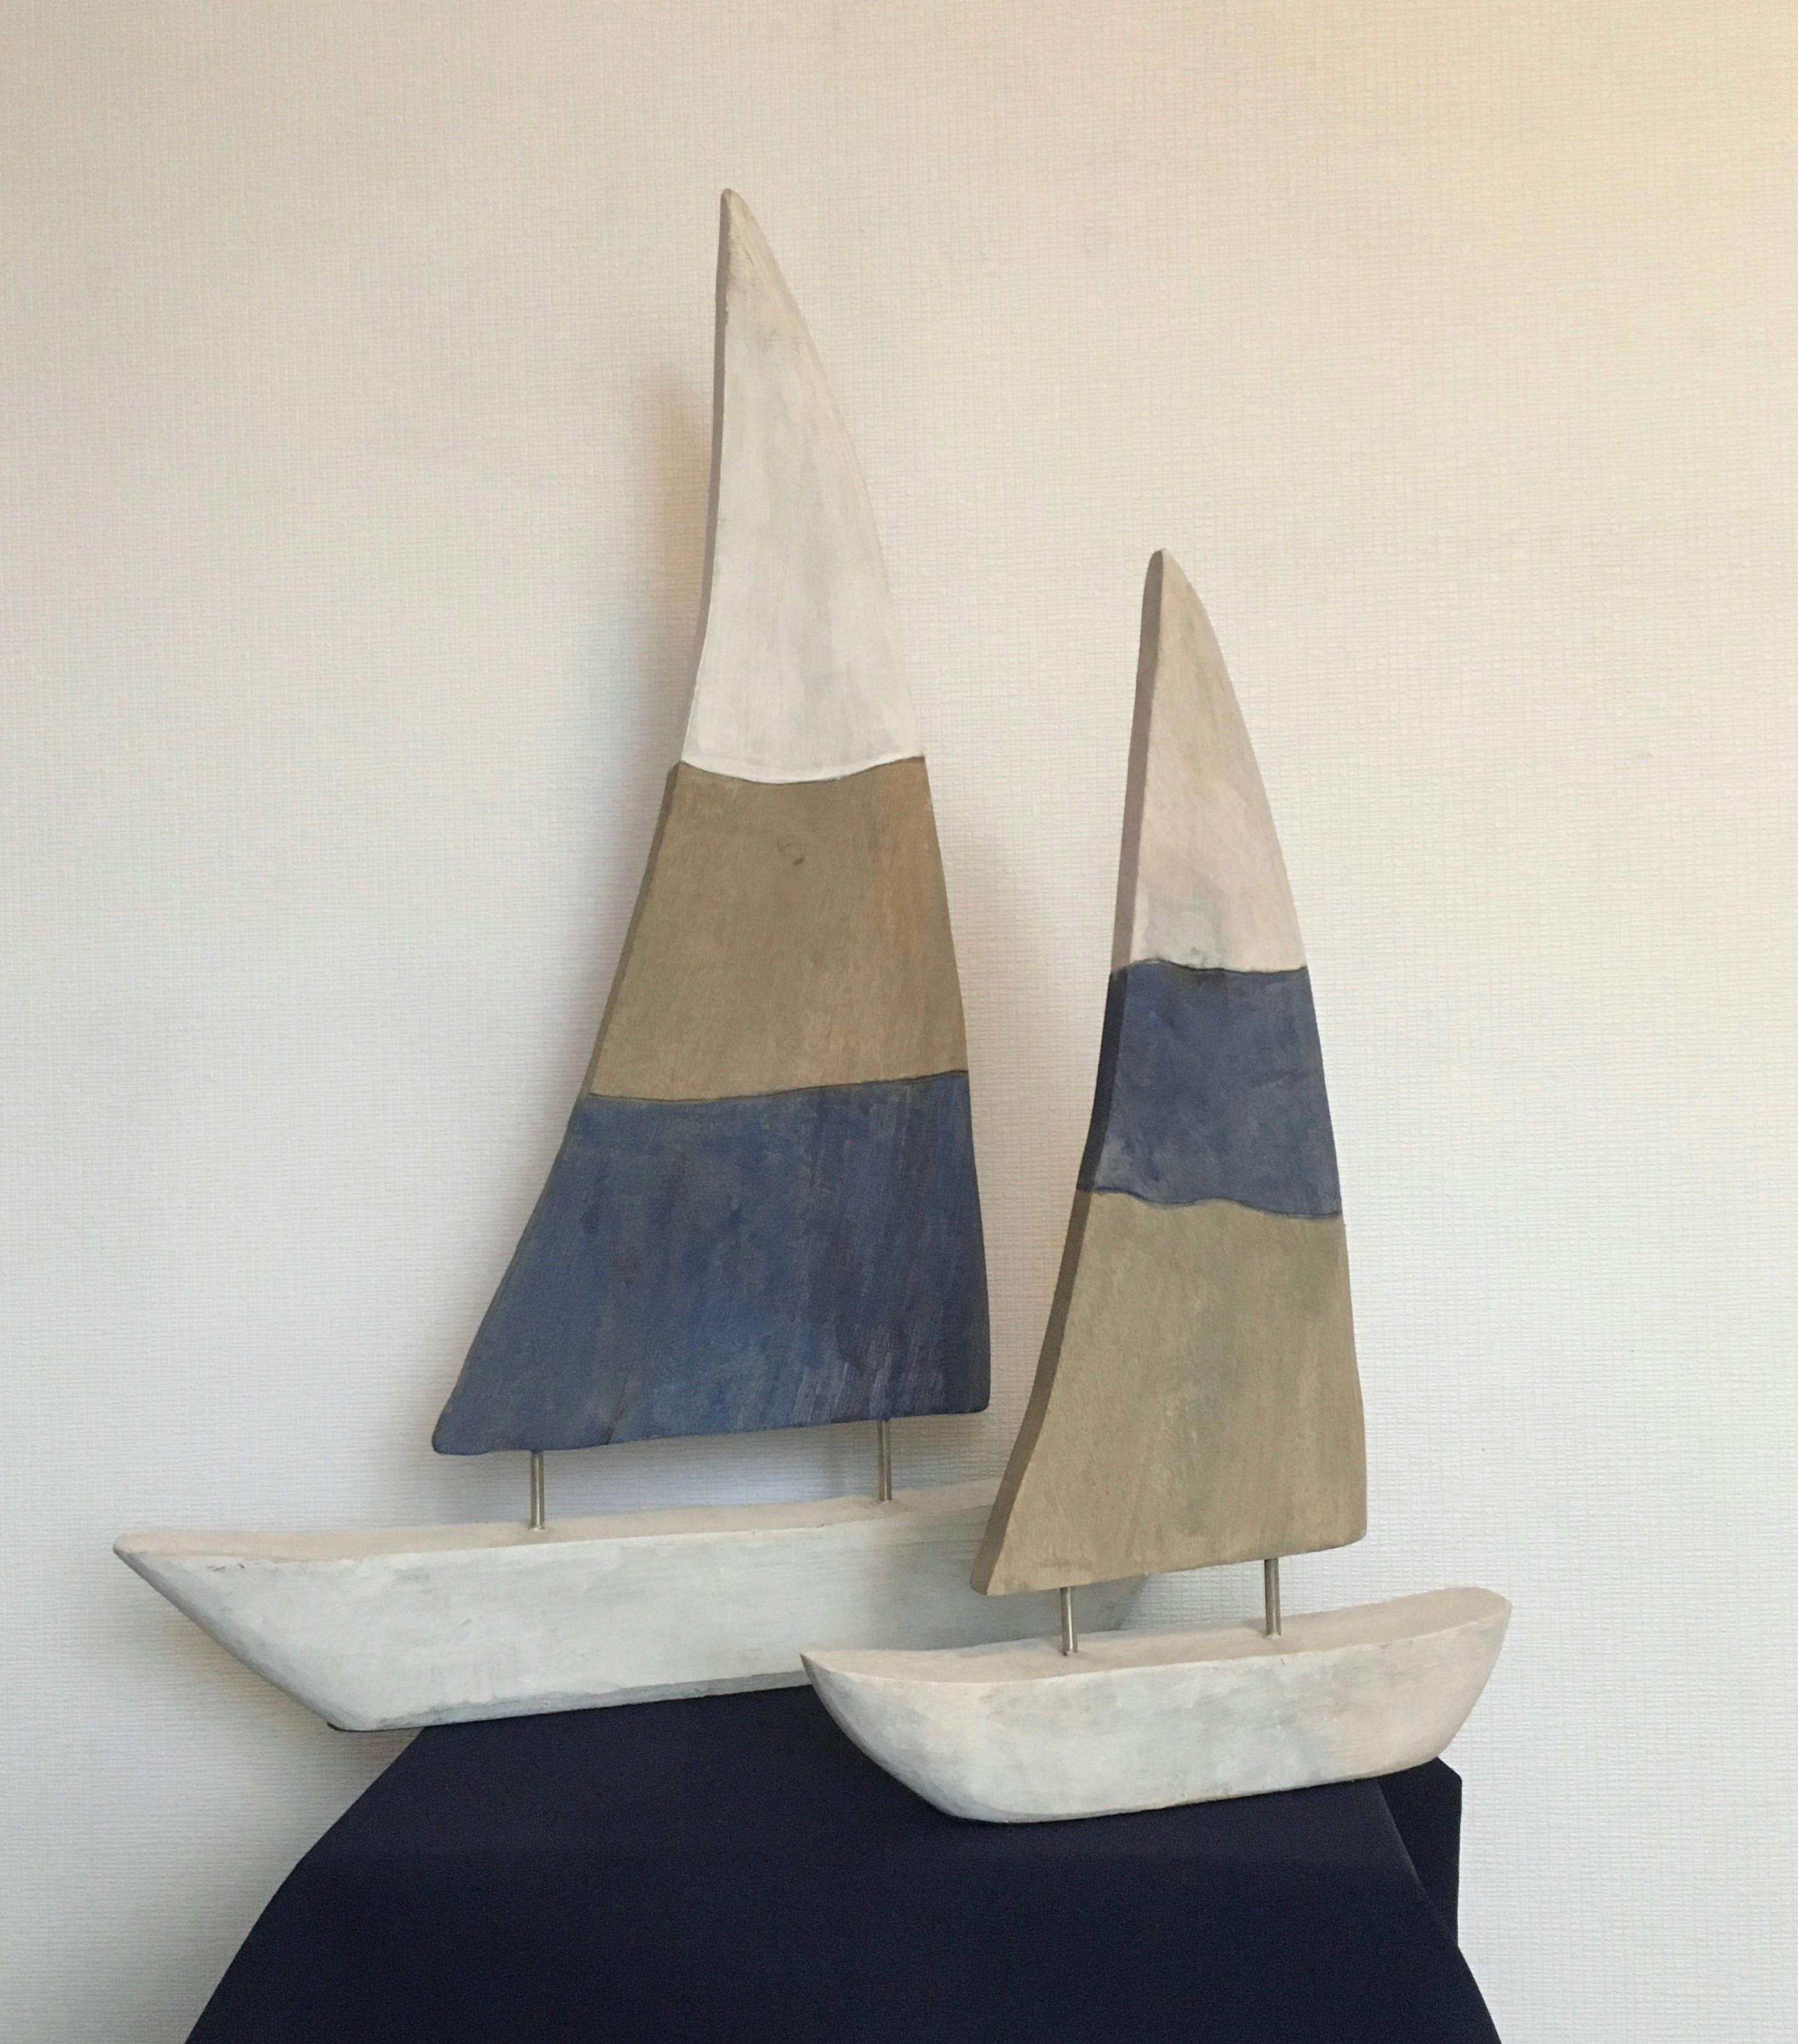 Boot Holz, Segelboot Tischdeko, Holzdeko Dekoobjekt 50x69x5cm, Fensterdeko, Skulptur Moritz Wanddeko, Deko